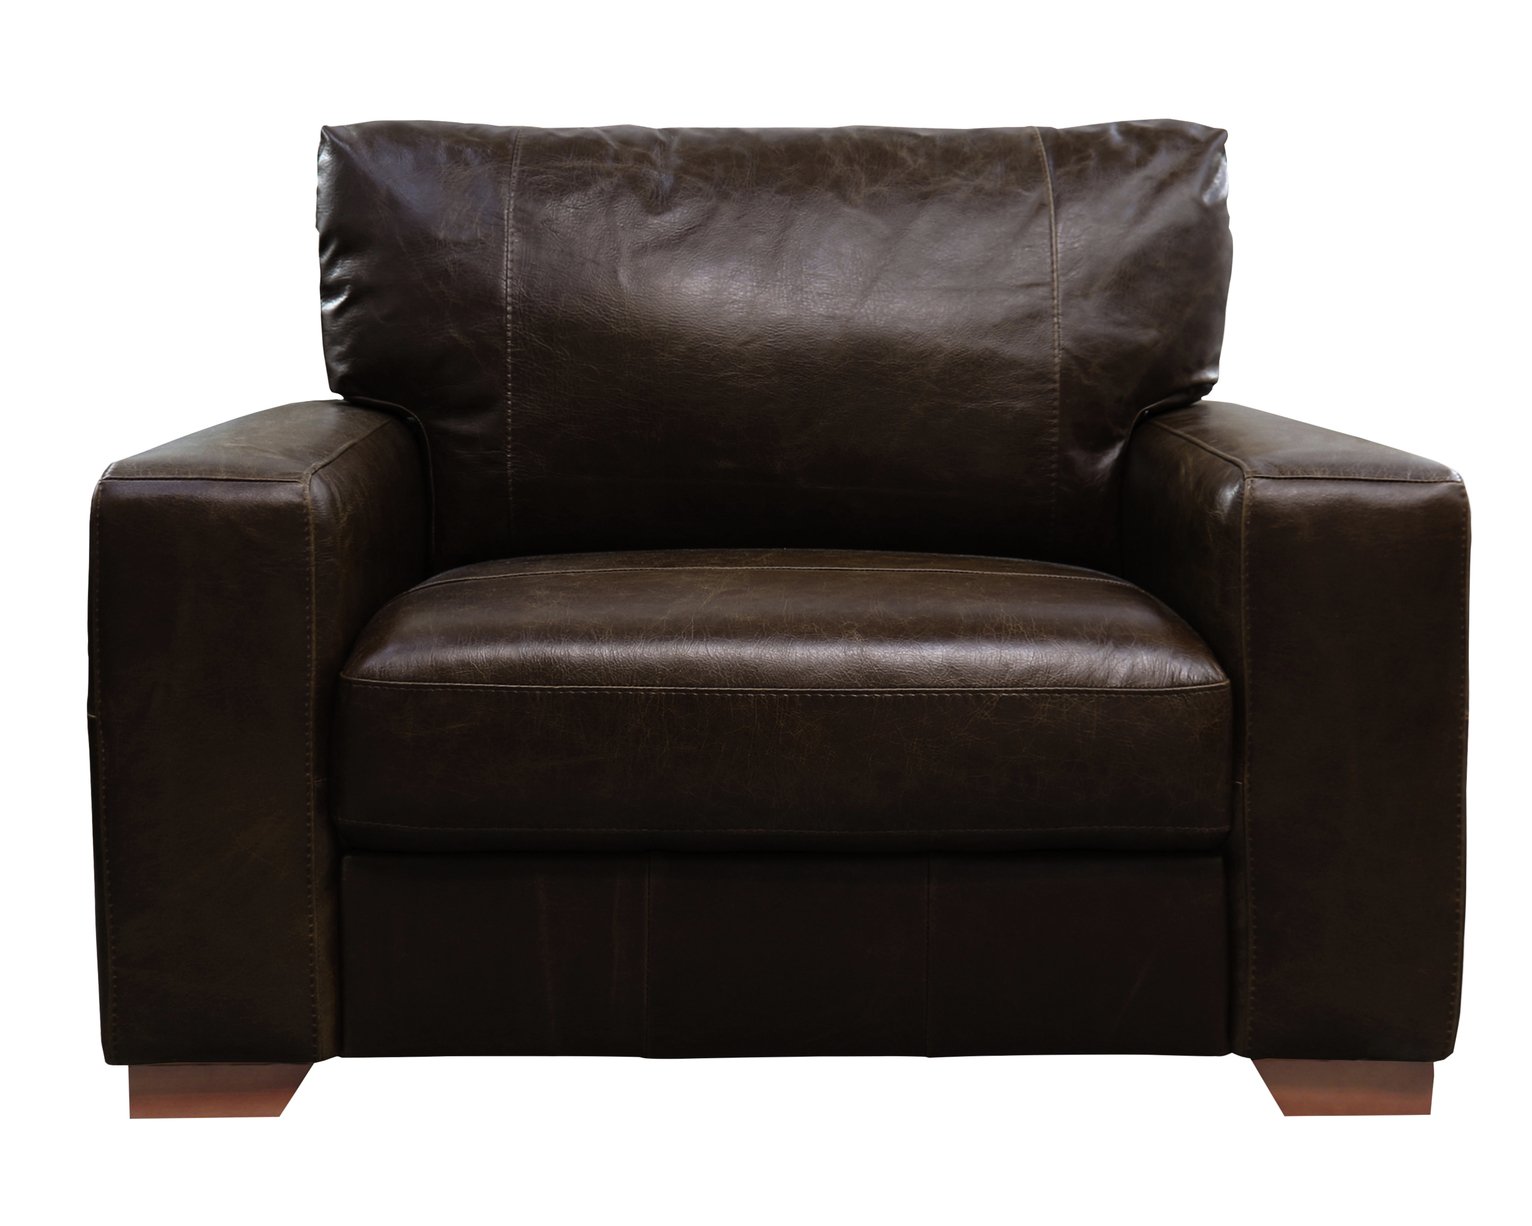 Argos Home Eton Leather Cuddle Chair - Dark Brown